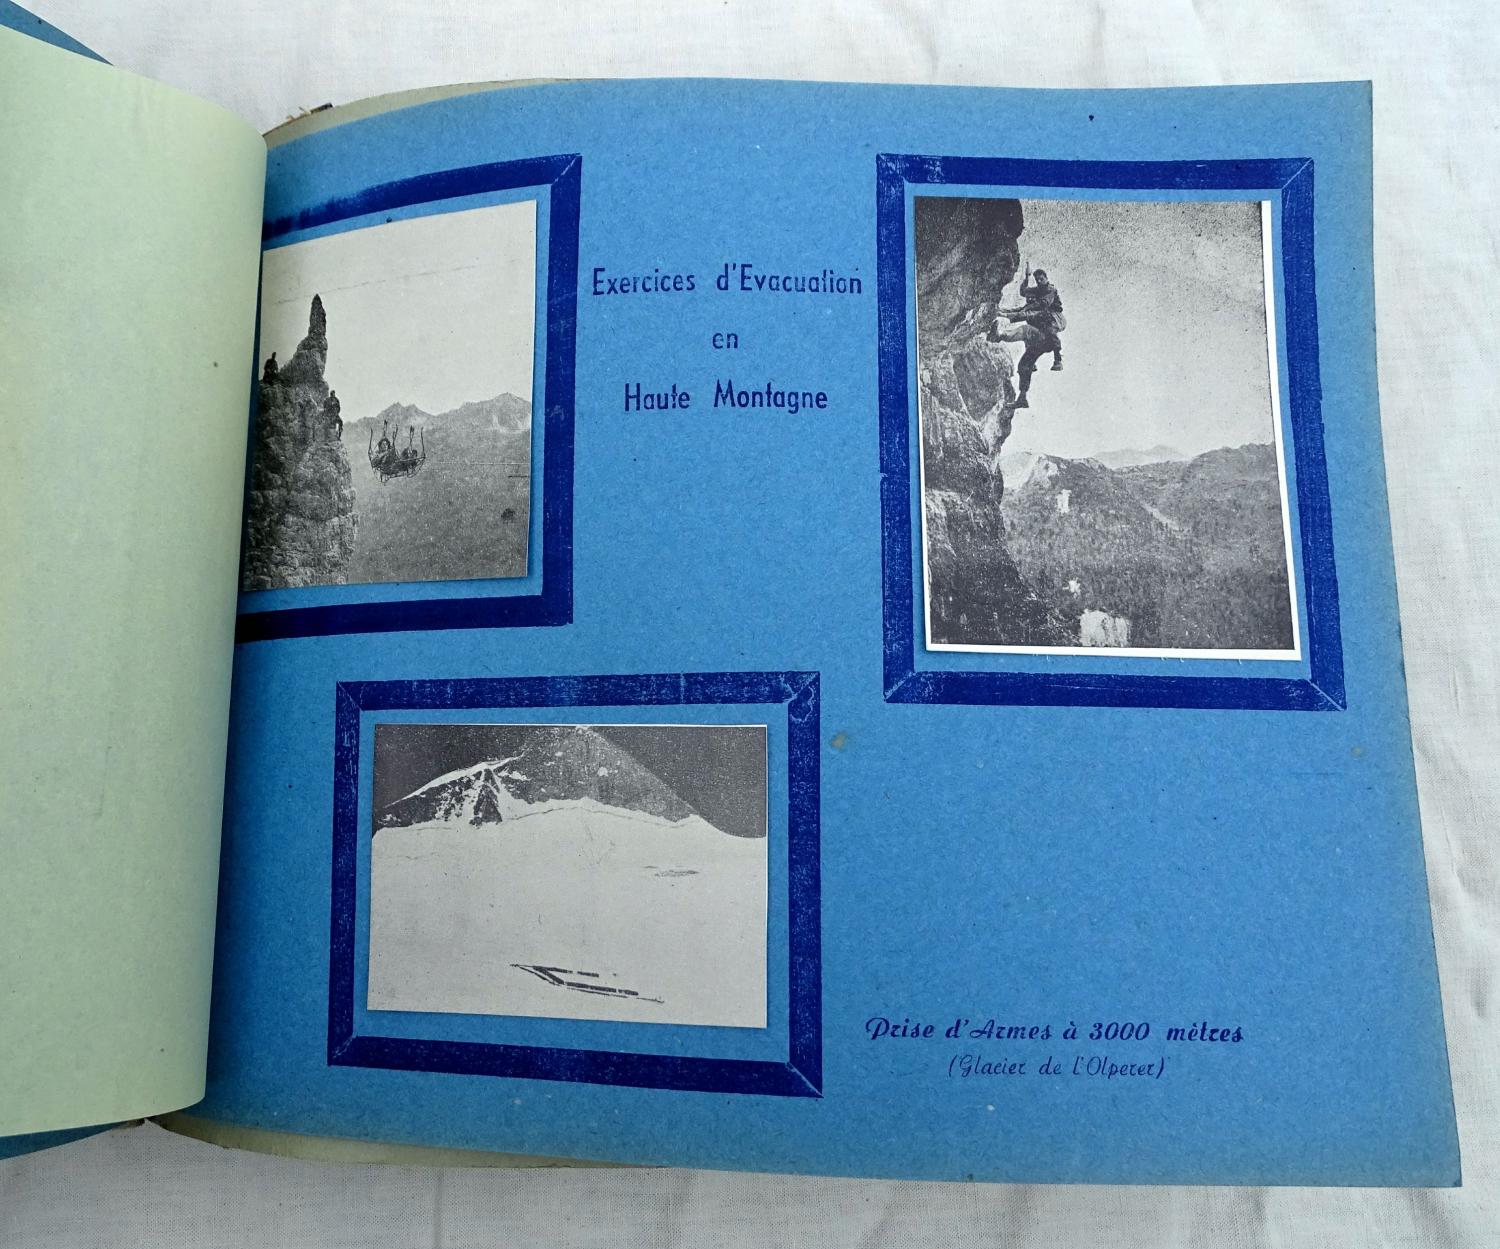 Album souvenir Le 28&egrave;me Bataillon de Chasseurs Alpins en Autriche 1953